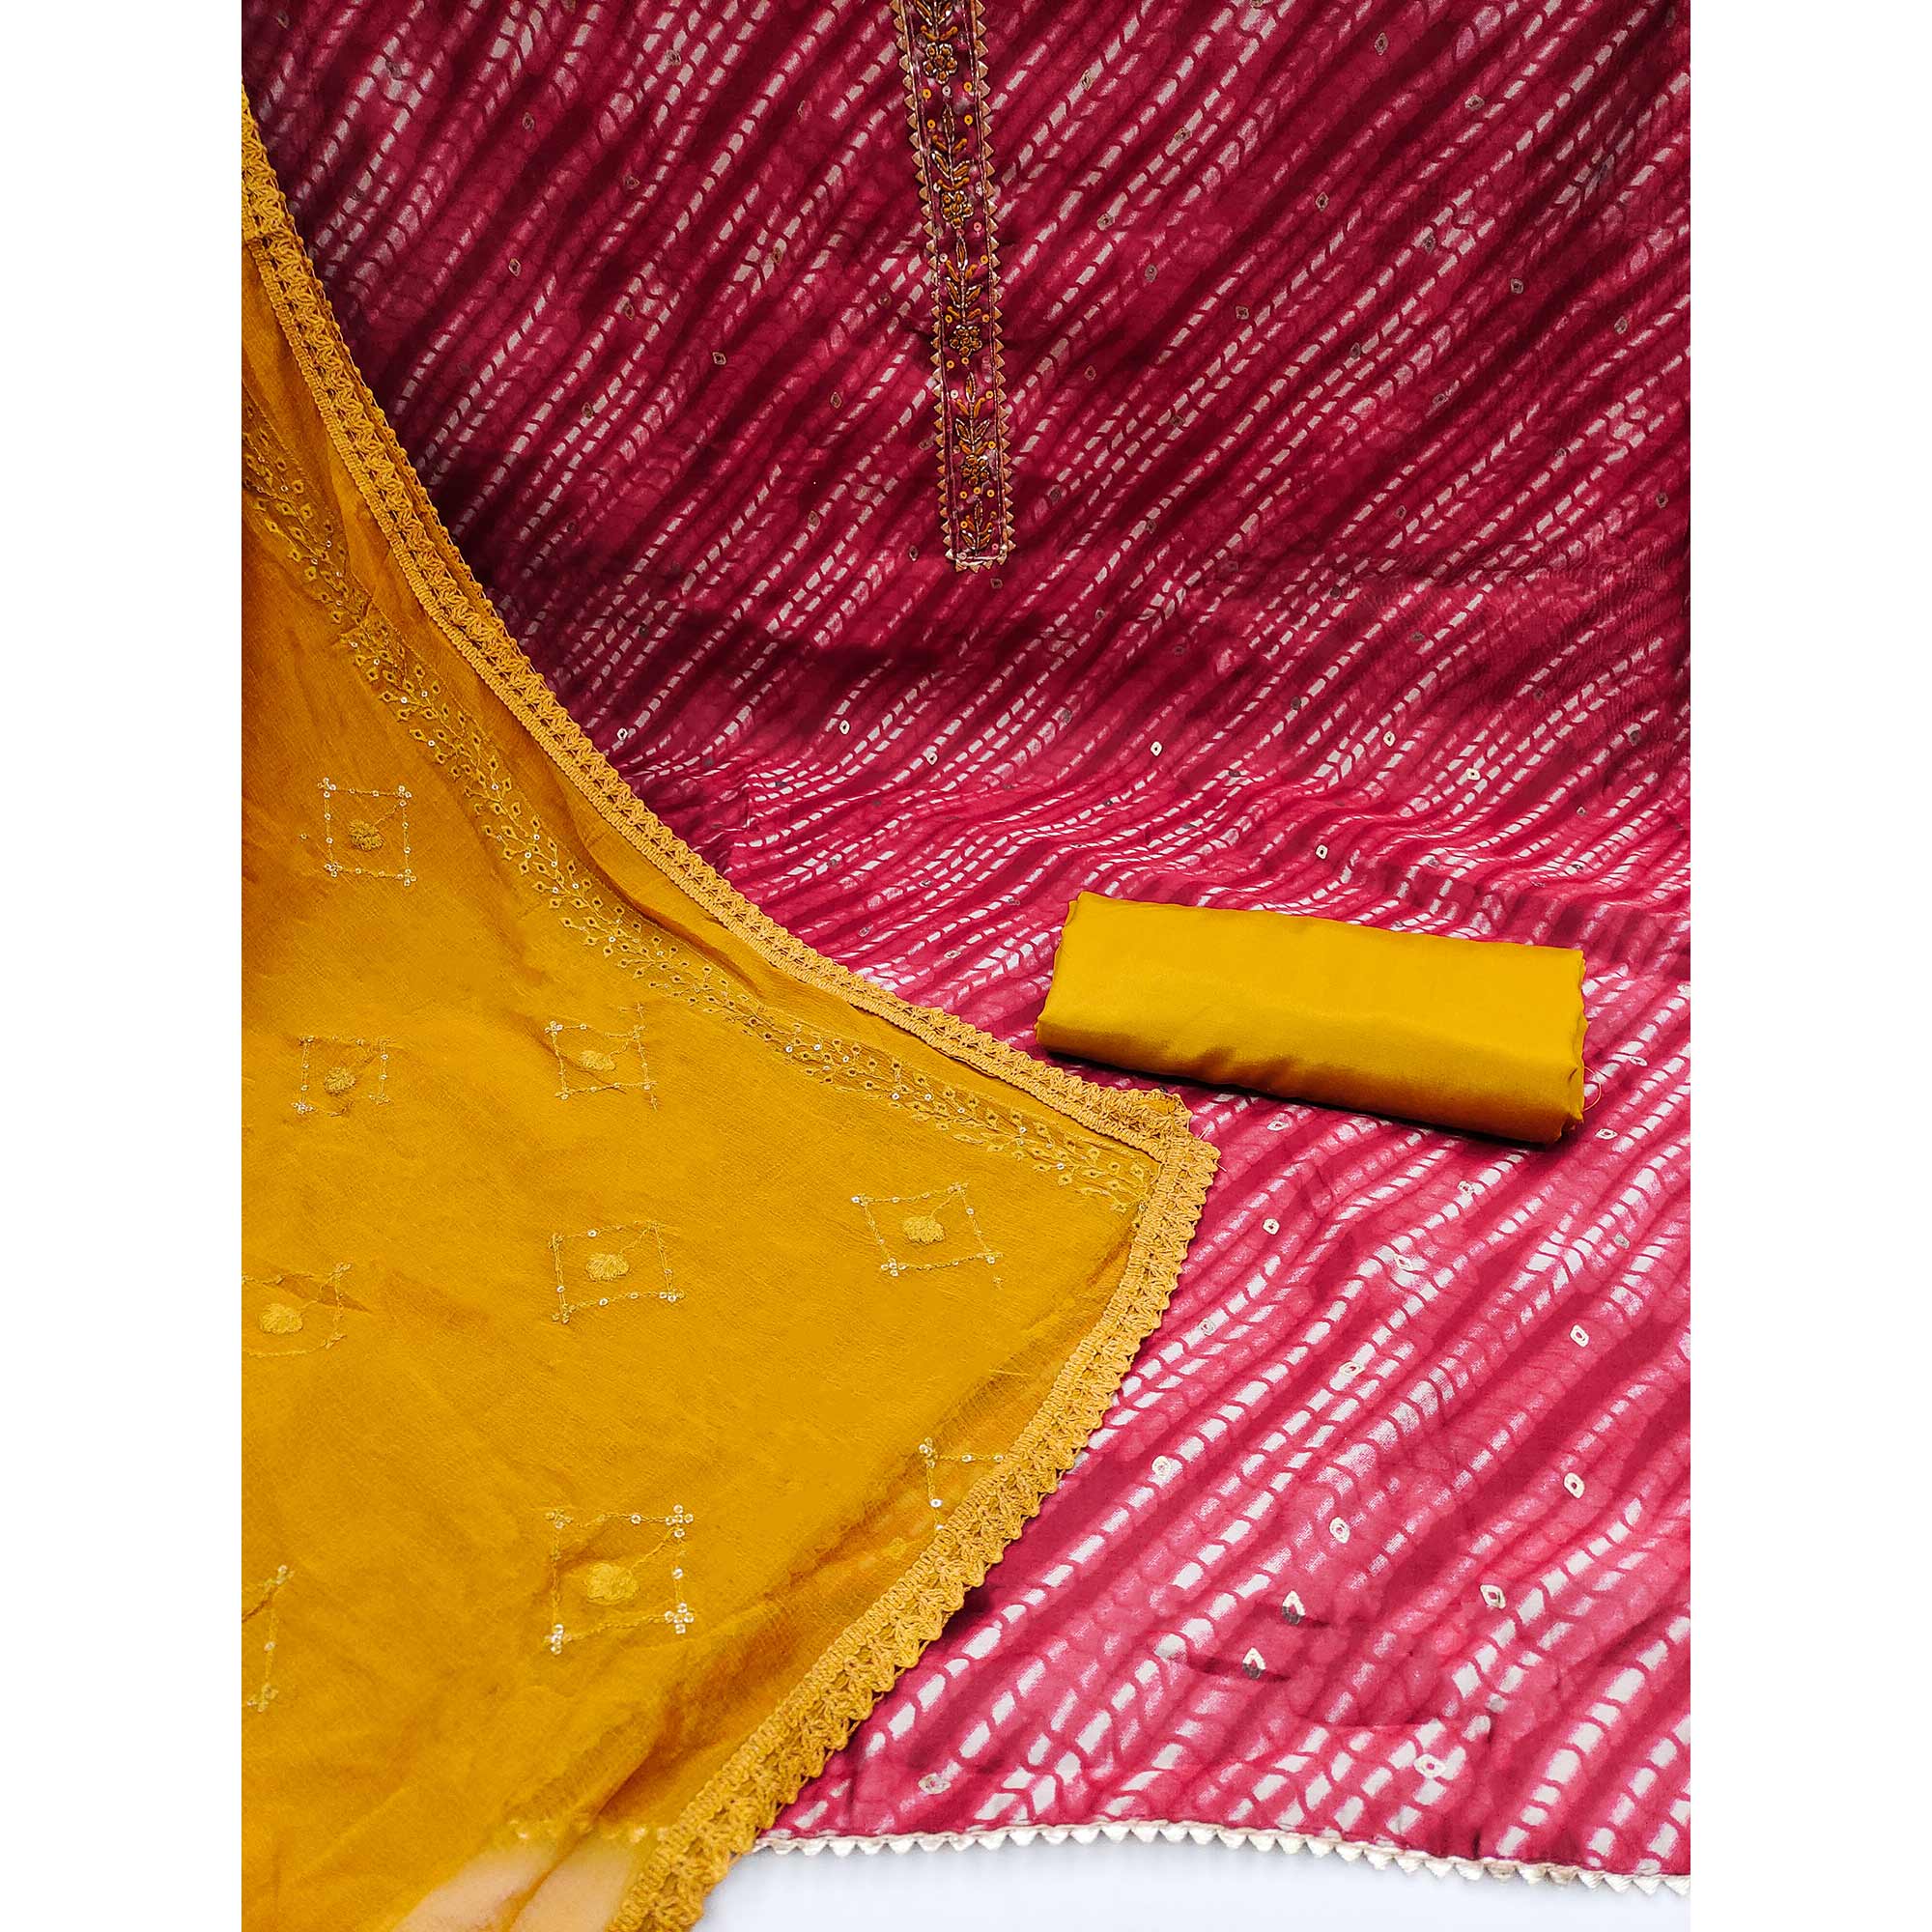 Pink Printed Modal Dress Material